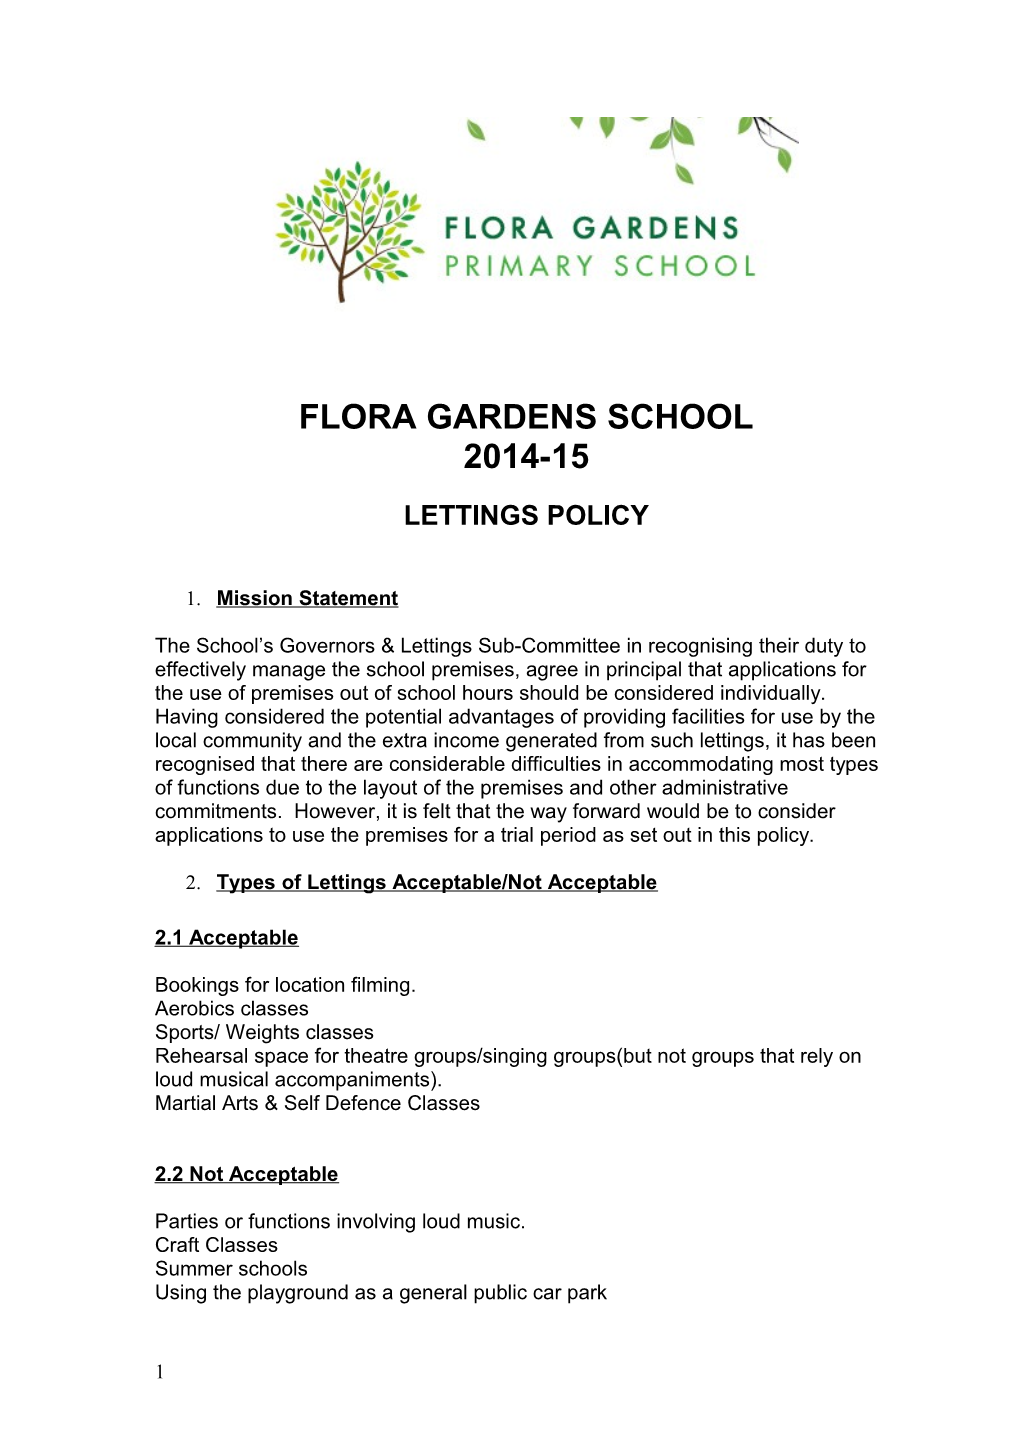 Floragardens School